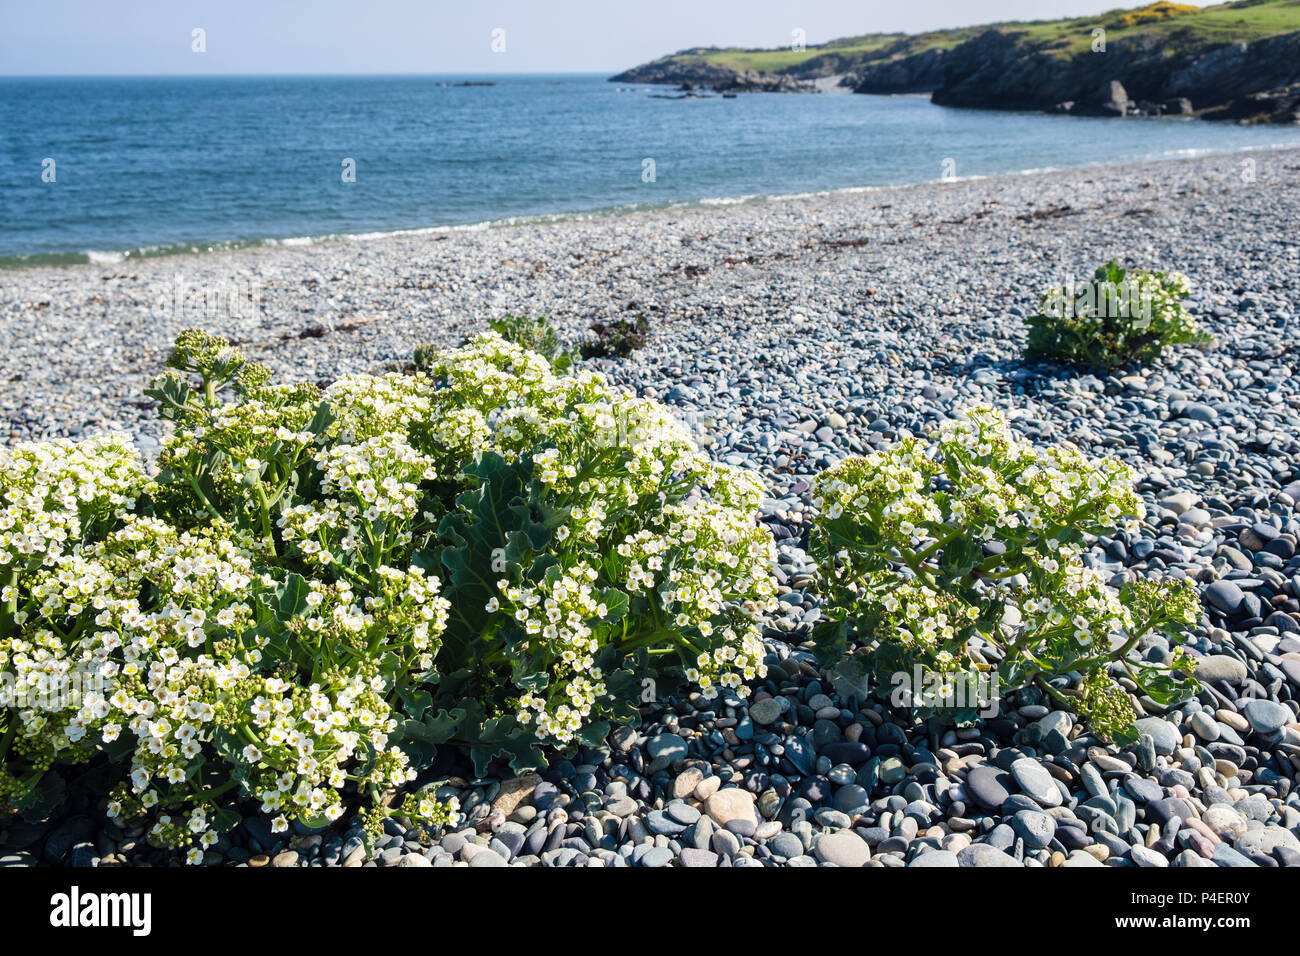 La mer de floraison (kale Crambe maritima) de plantes poussant à l'état sauvage sur plage de galets en été. Cemlyn Cemaes Bay, île d'Anglesey, au Pays de Galles, Royaume-Uni, Angleterre Banque D'Images